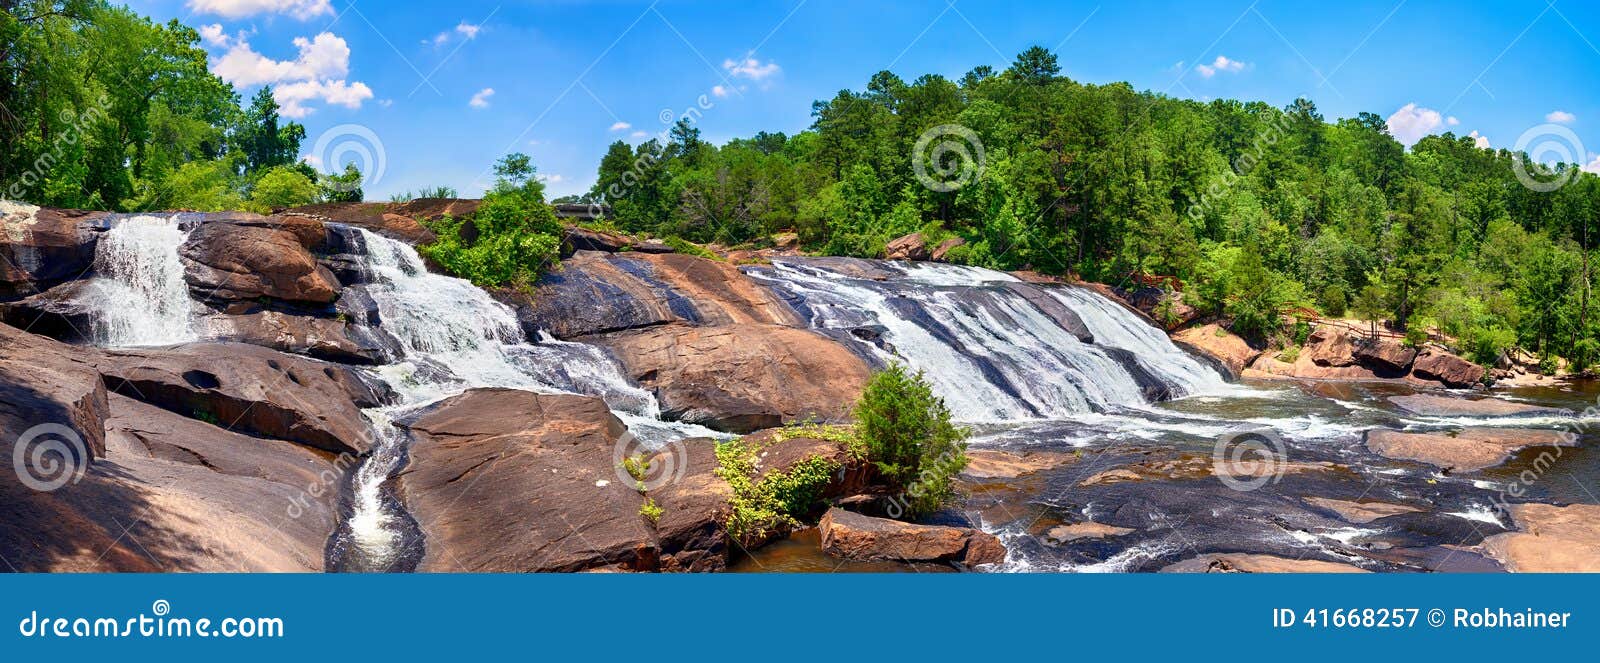 rushing waterfalls at high falls state park in georgia